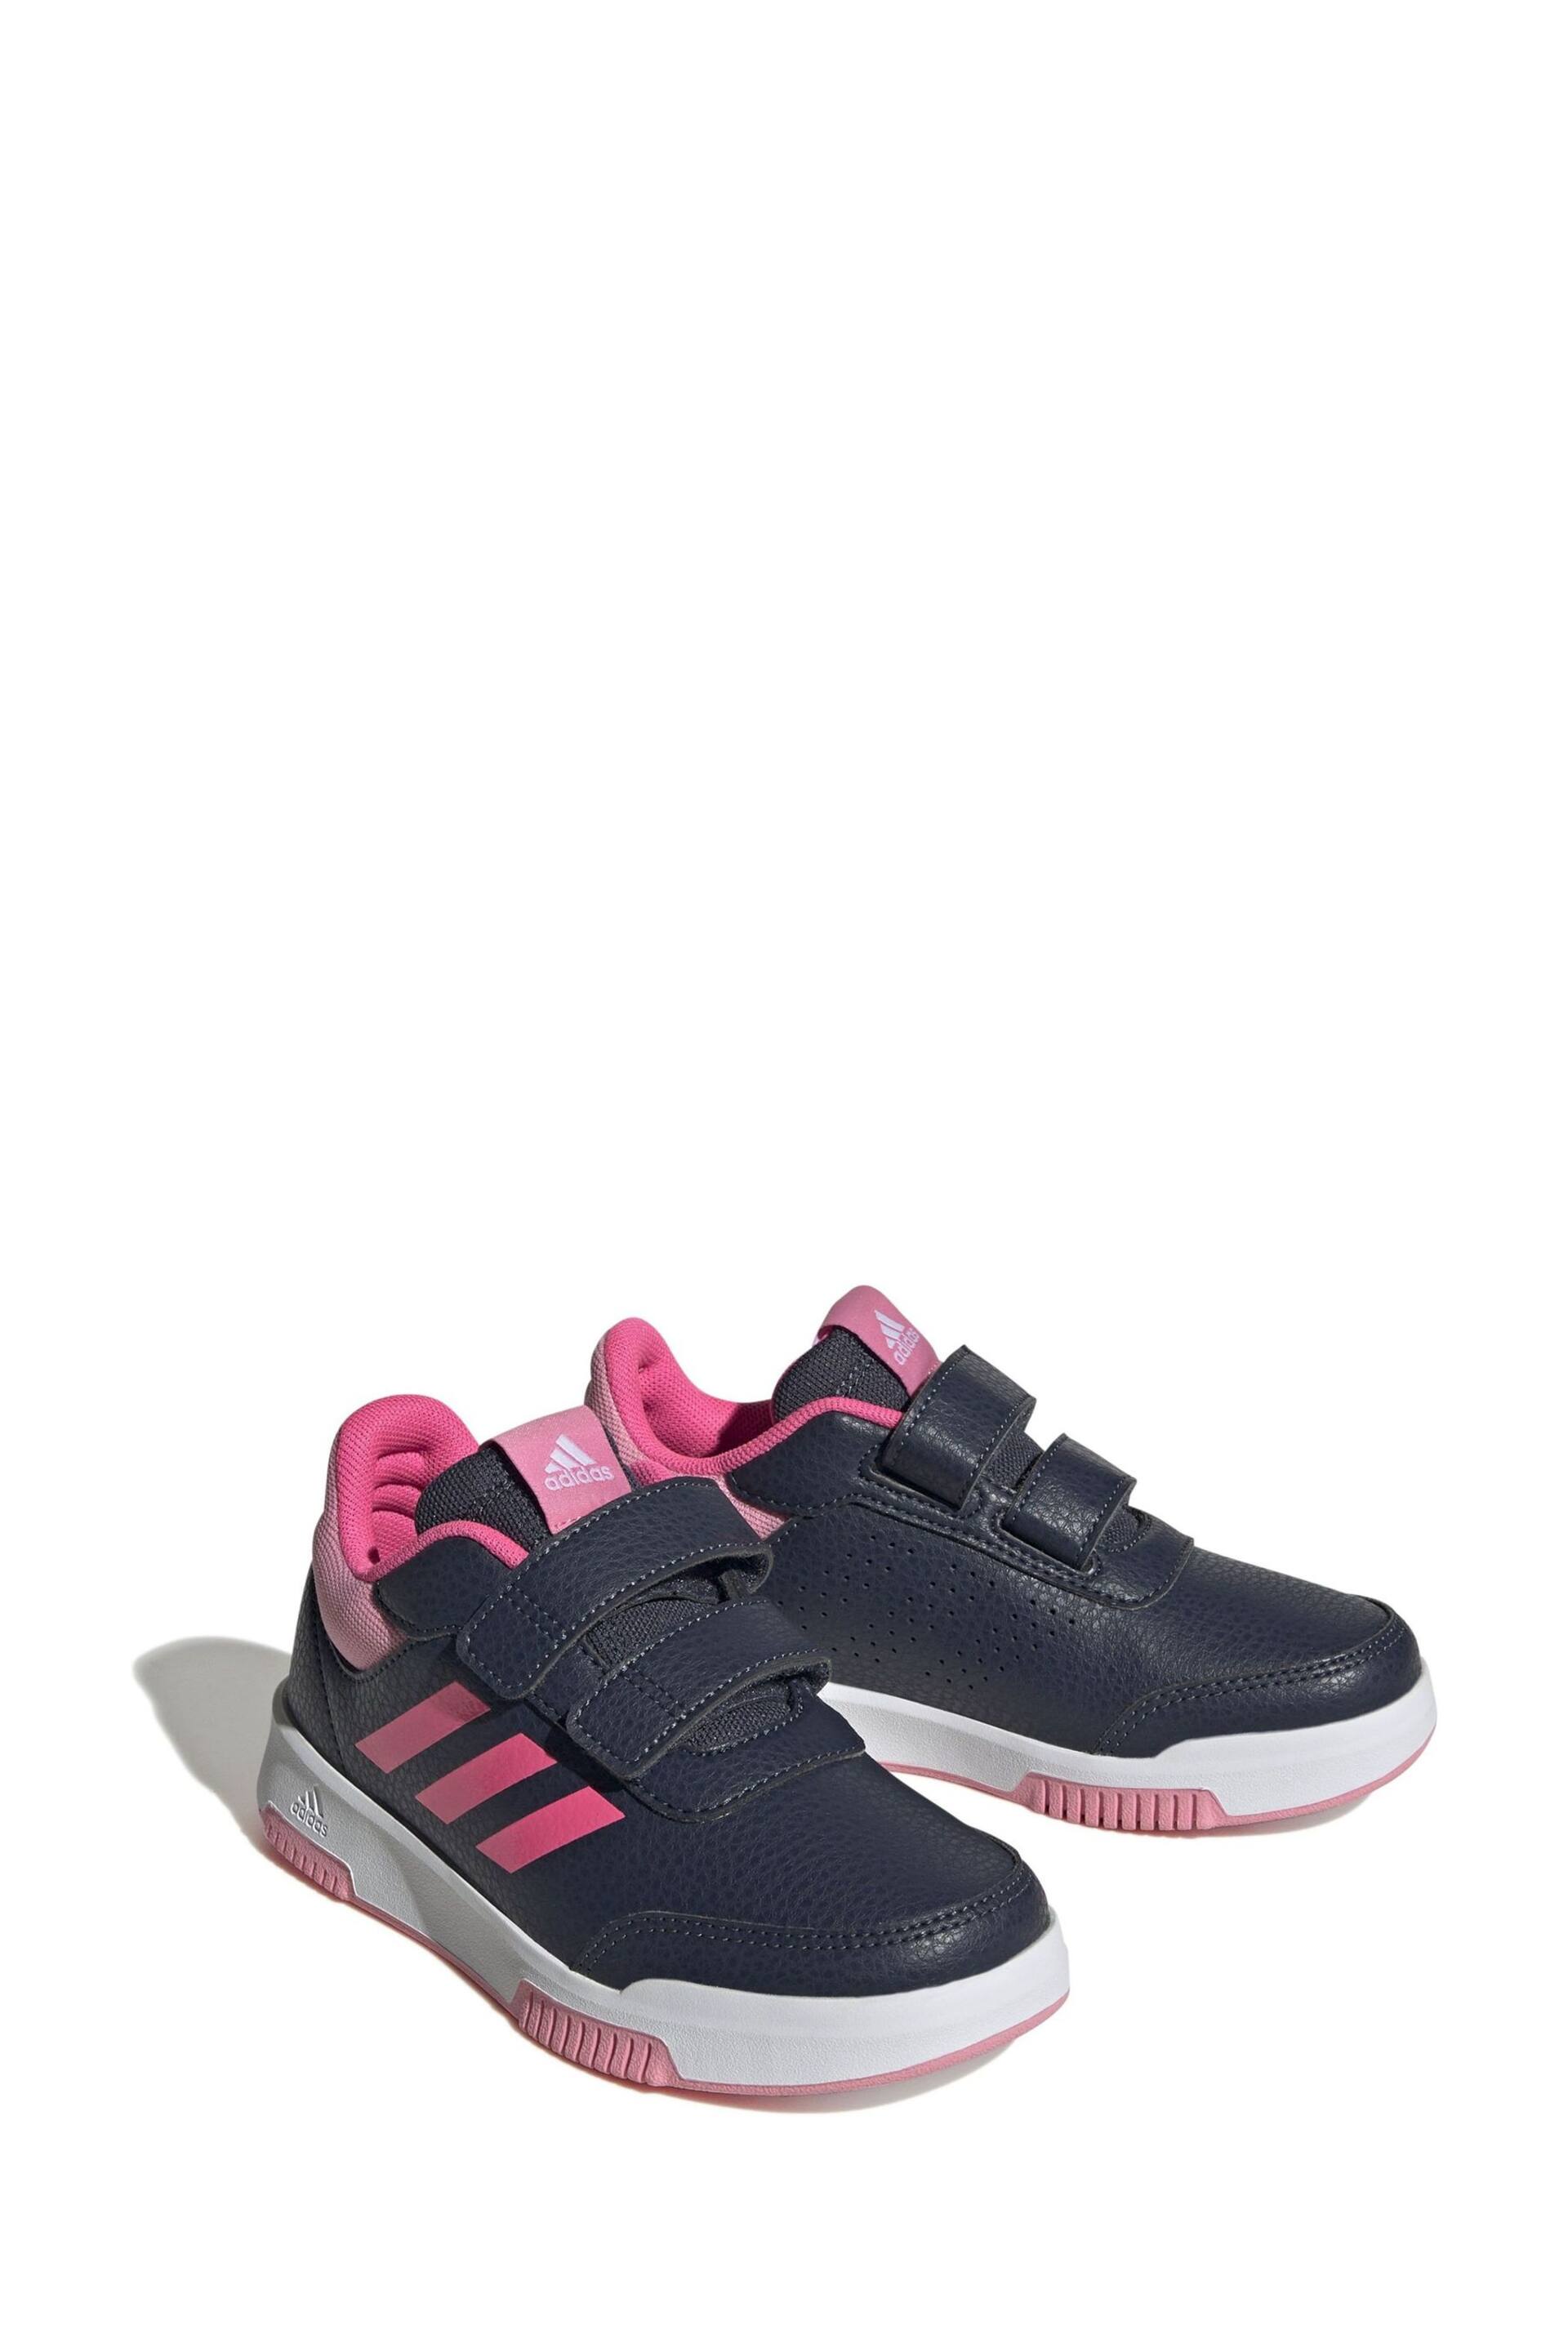 adidas Black/Pink Kids Sportswear Tensaur Hook And Loop Trainers - Image 3 of 8